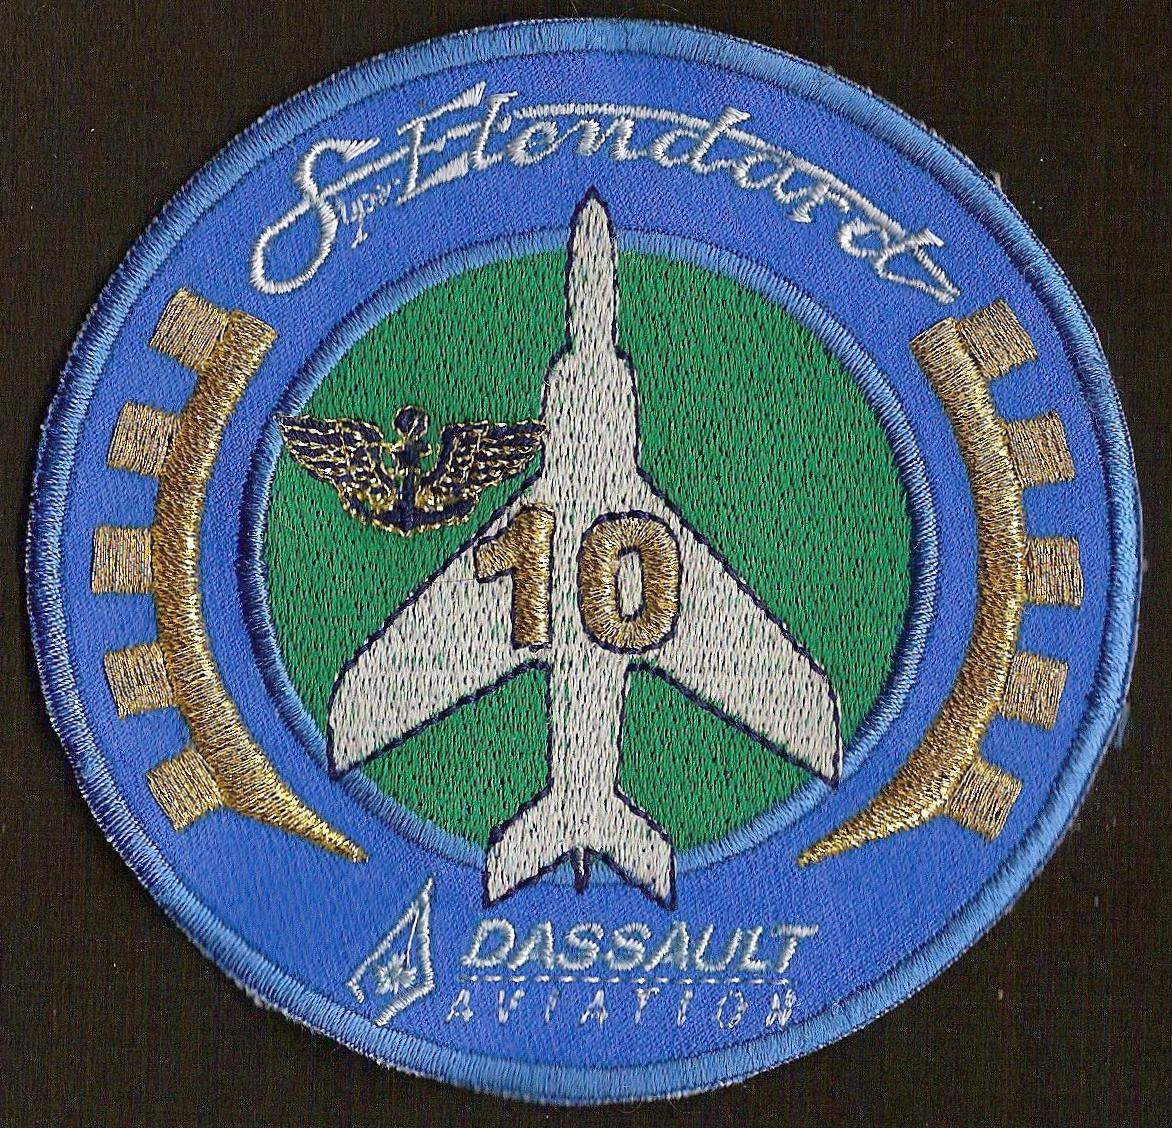 Dassault Aviation - SEM - mécanique - 10 ans - série 2